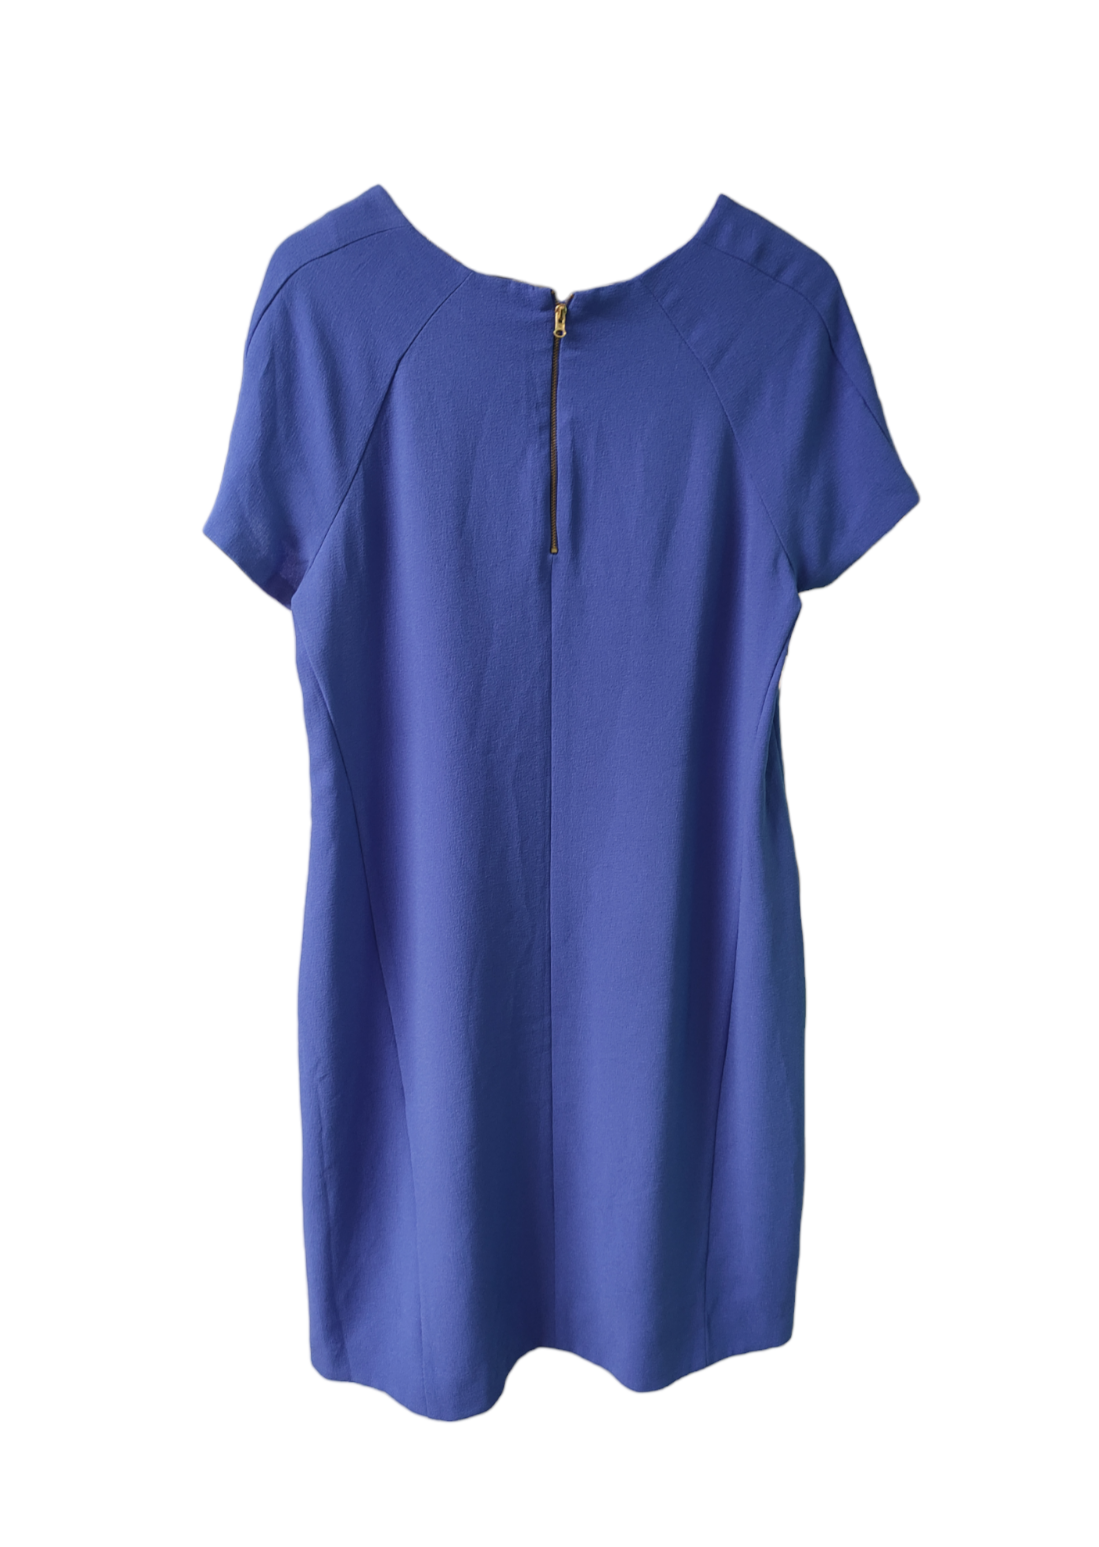 Midi Φόρεμα σε Γαλάζιο Χρώμα (Large)